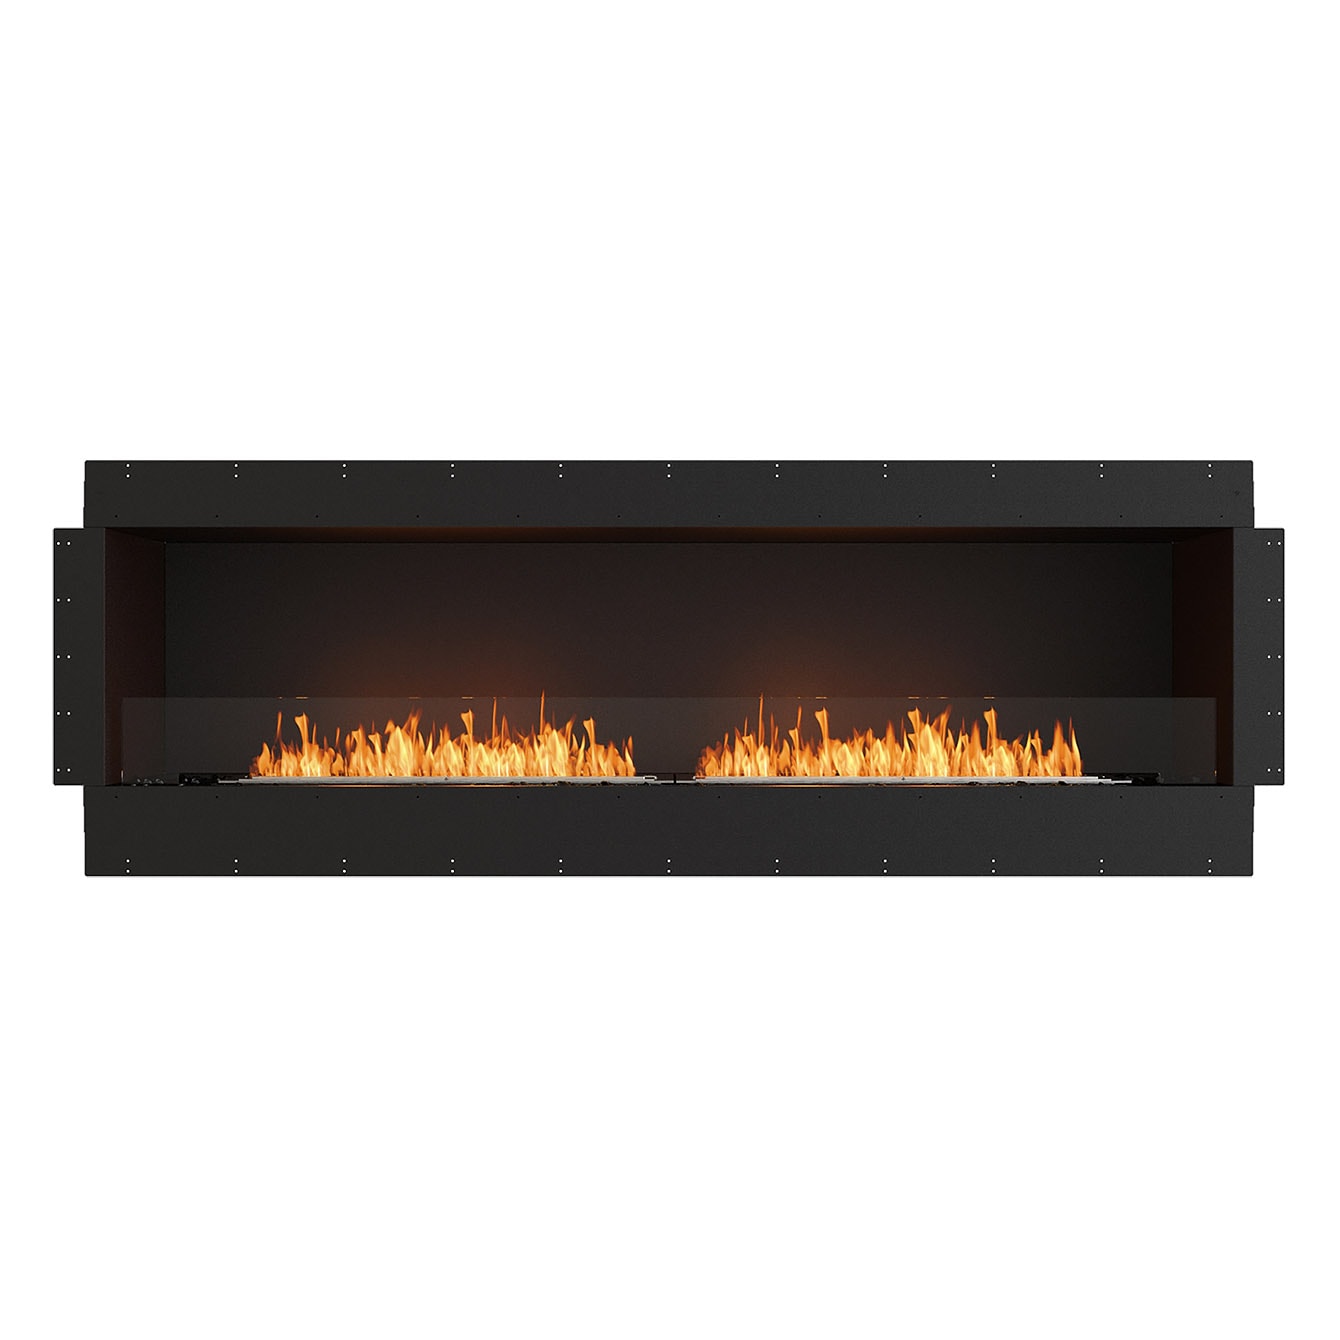 Flex S86 - Luxuriöser ECOSMART FIRE Einbaukamin mit doppelter Feuerlinie | Radiamo